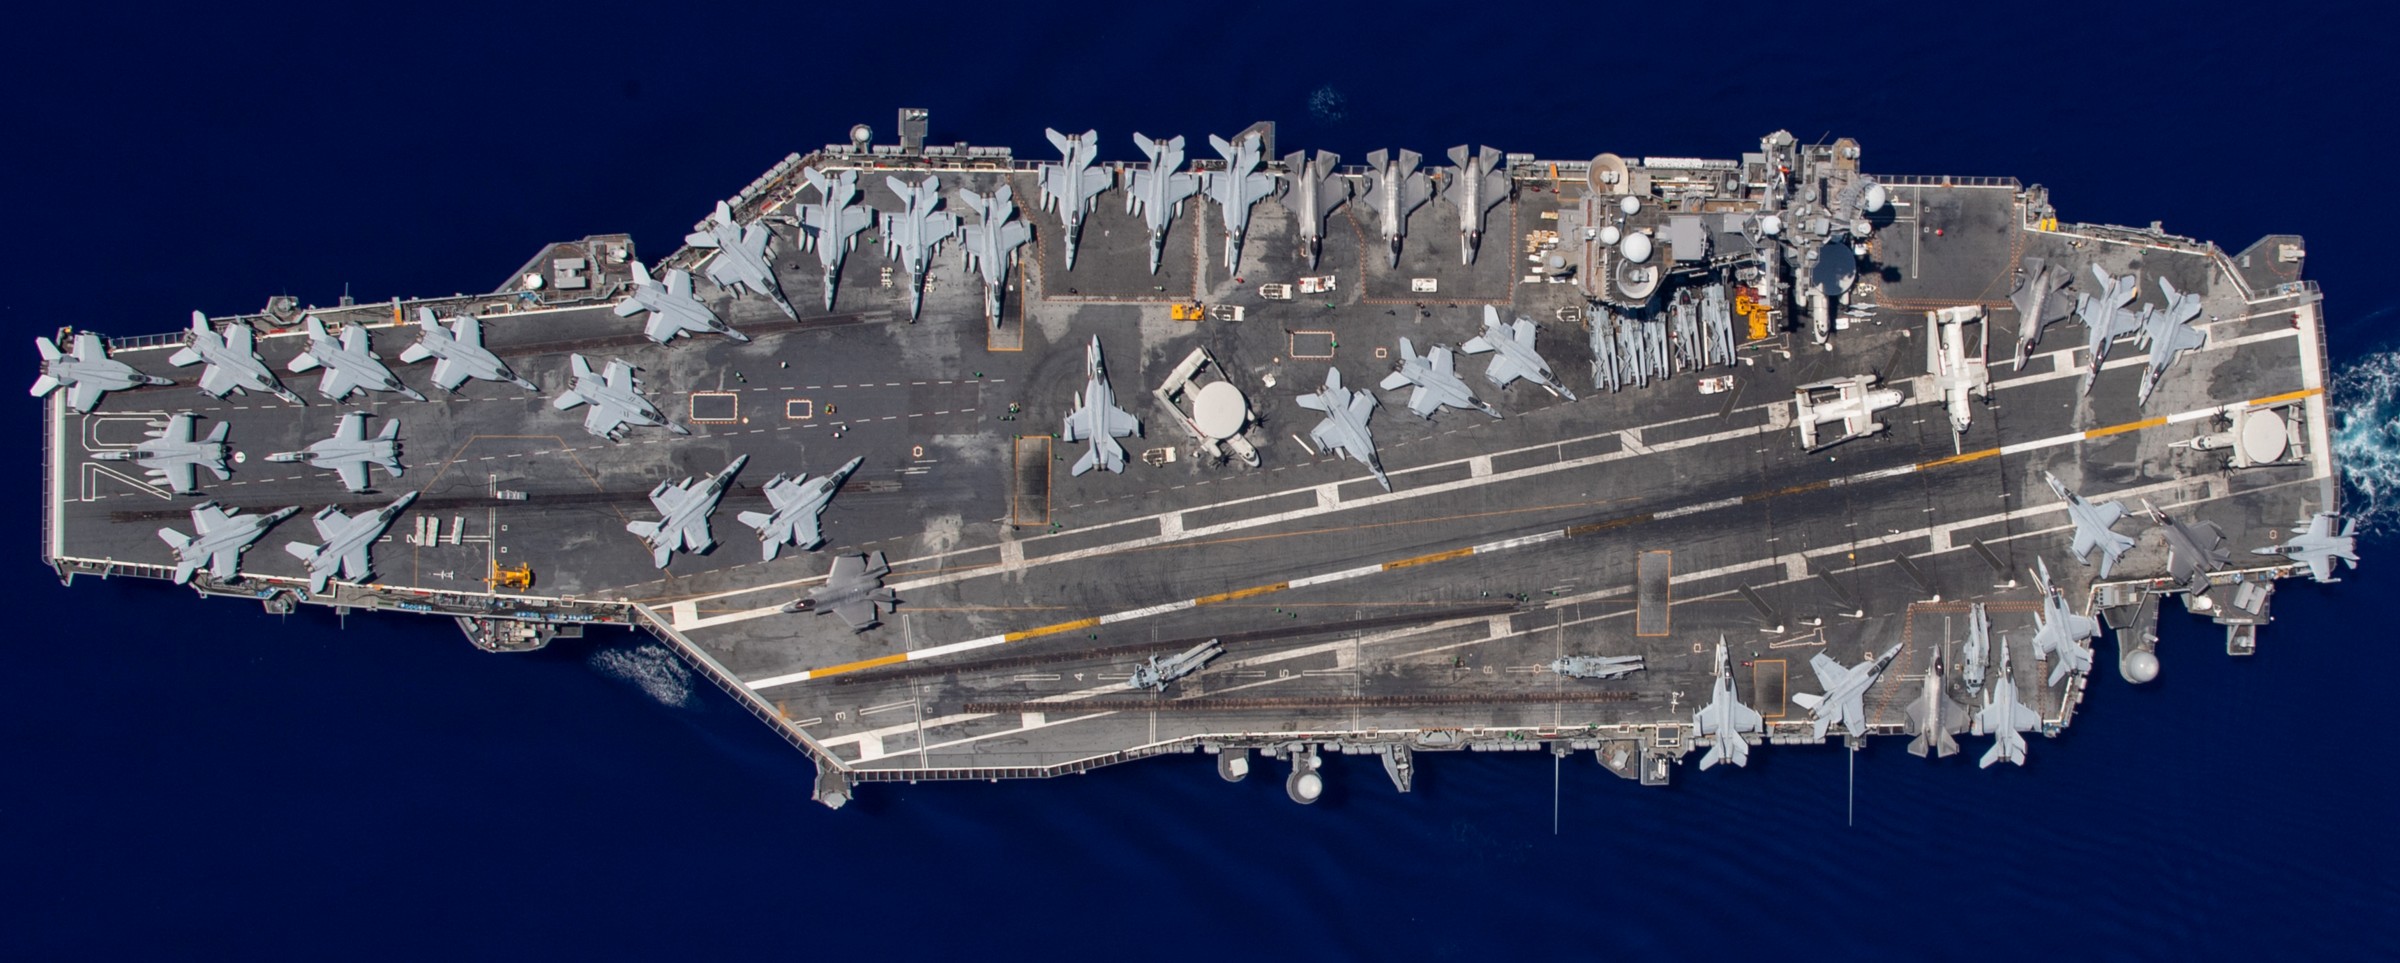 cvn-70 uss carl vinson nimitz class aircraft carrier air wing cvw-2 us navy comptuex pacific ocean 327